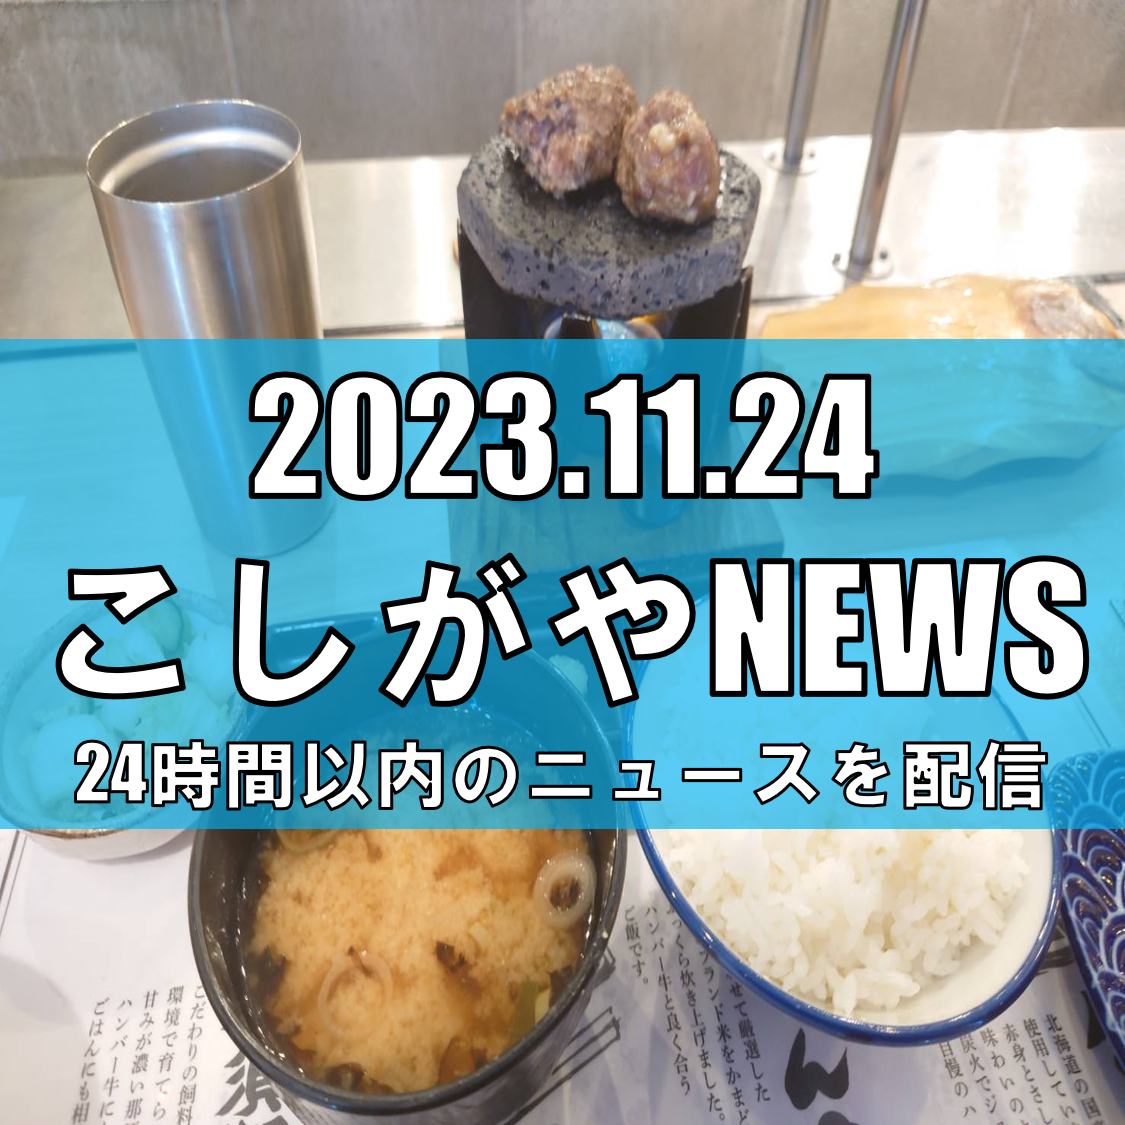 埼玉県の飲食店でO157食中毒発生、13人が症状【越谷ニュース】